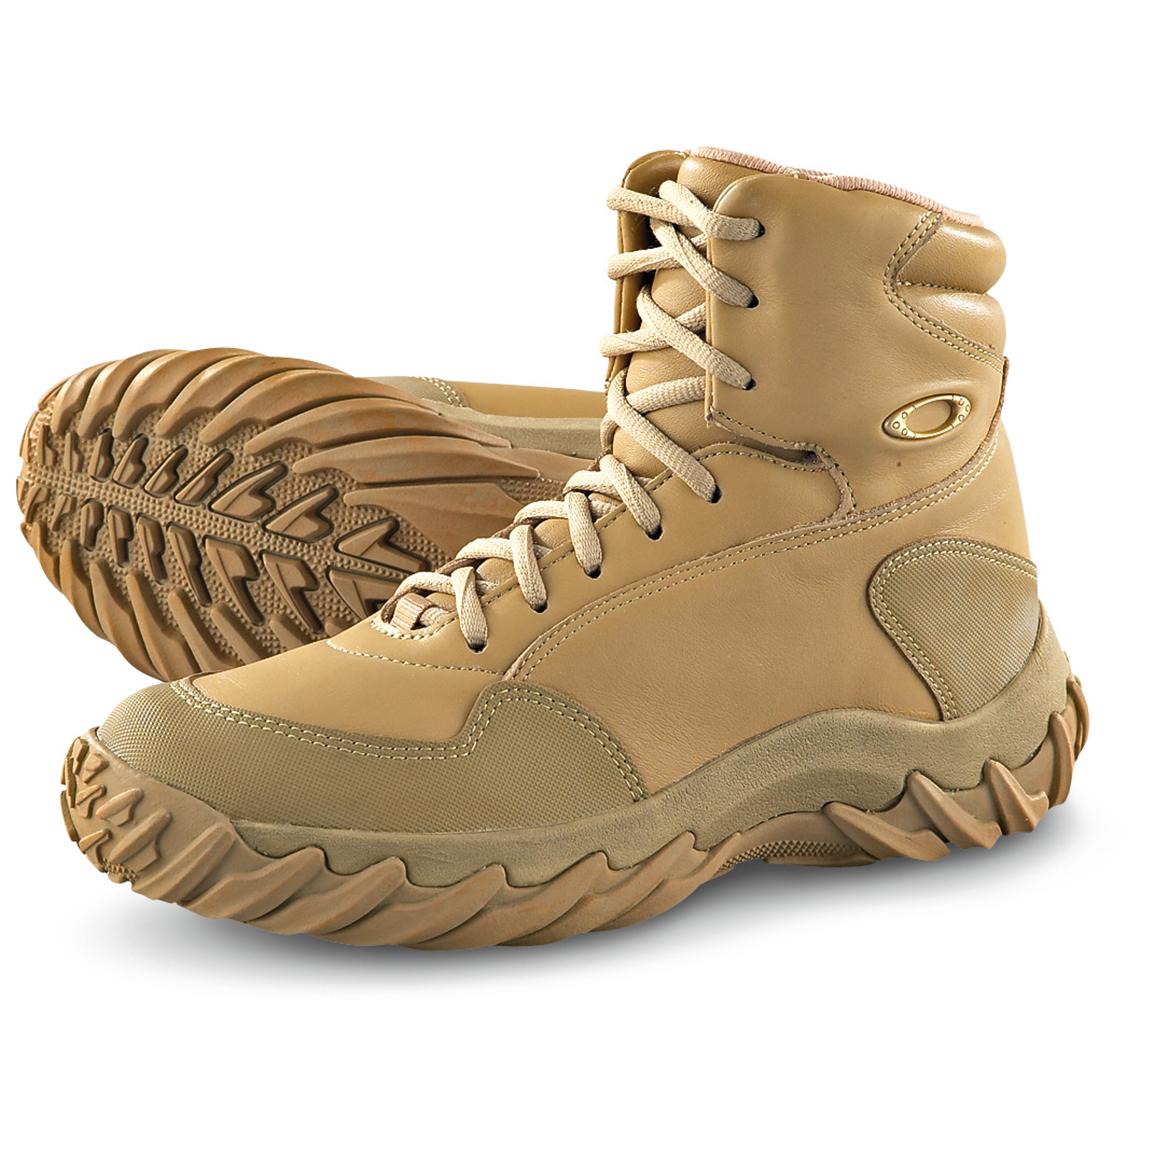 SI Assault Boots, Tan - 137900, Combat 